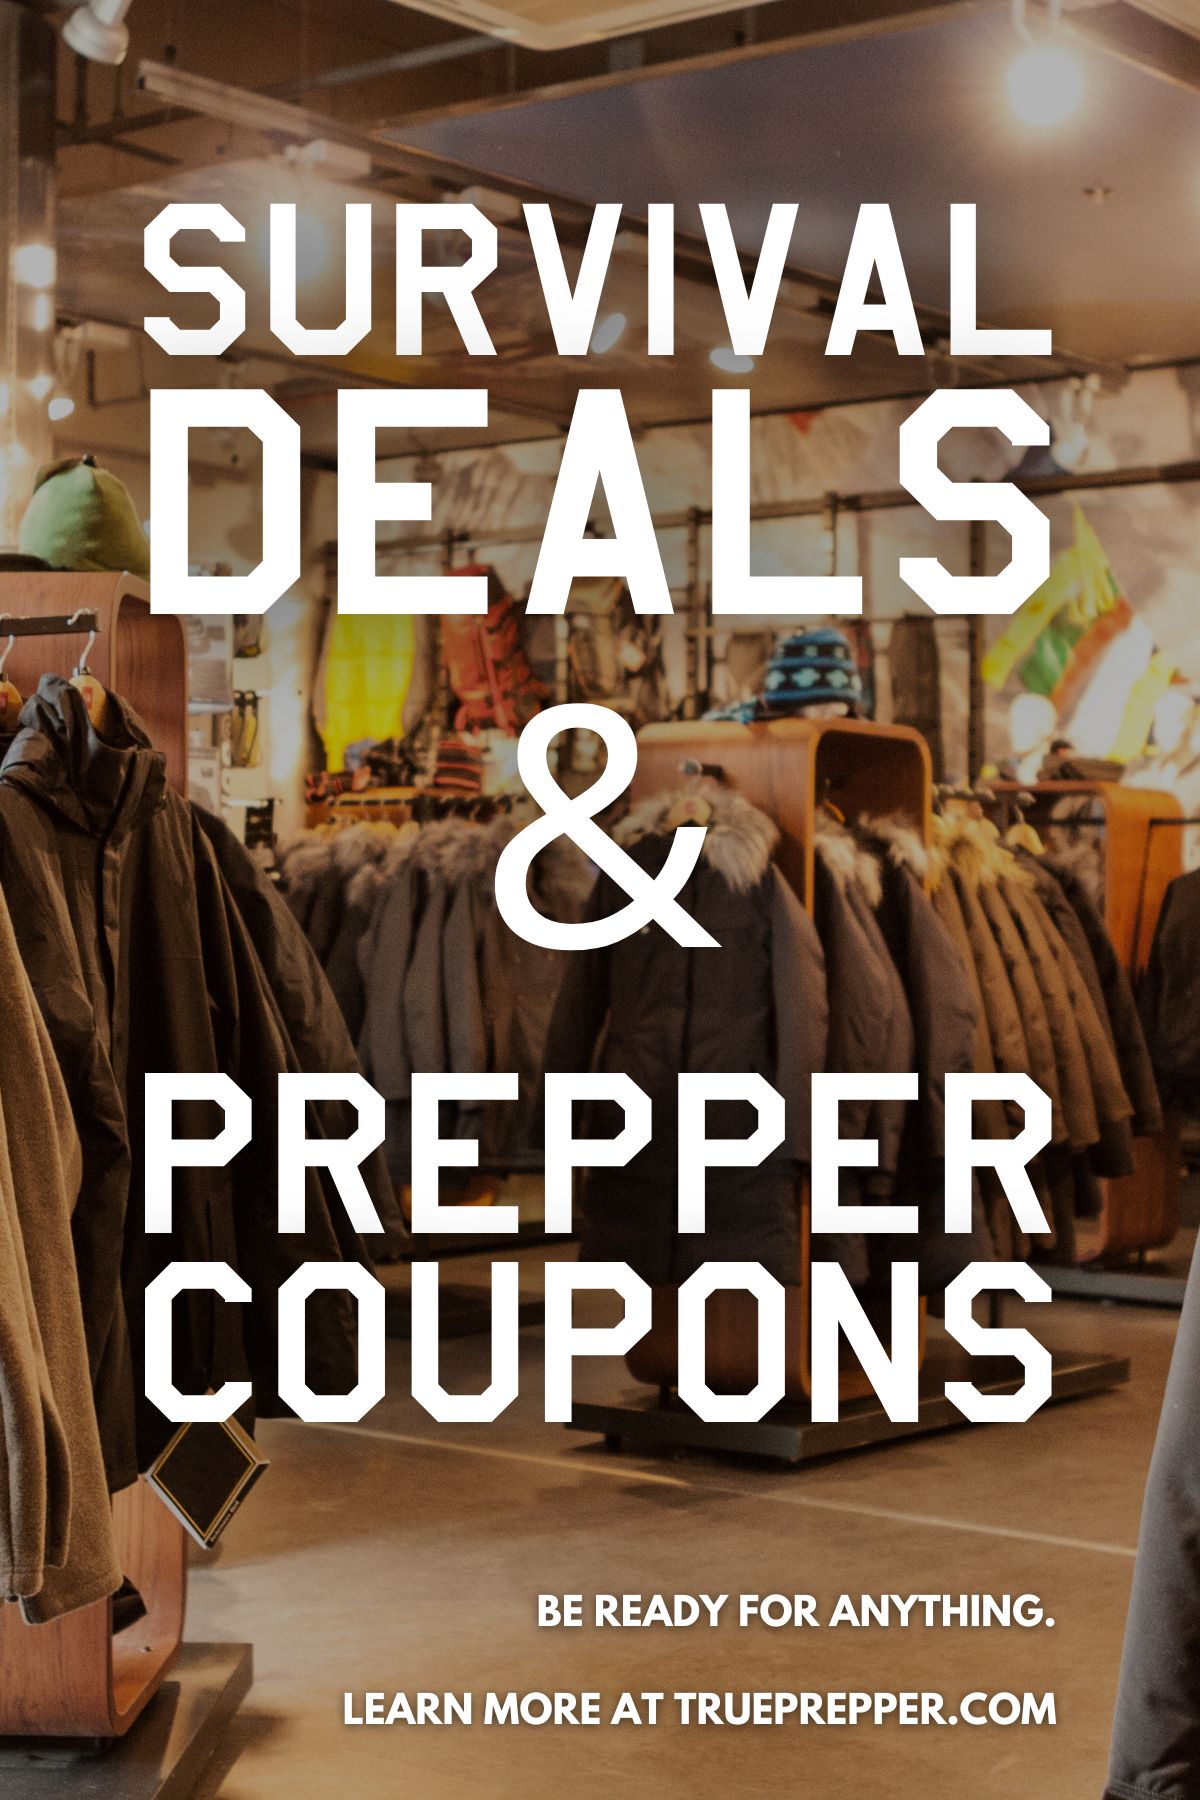 Survival Deals & Prepper Coupons